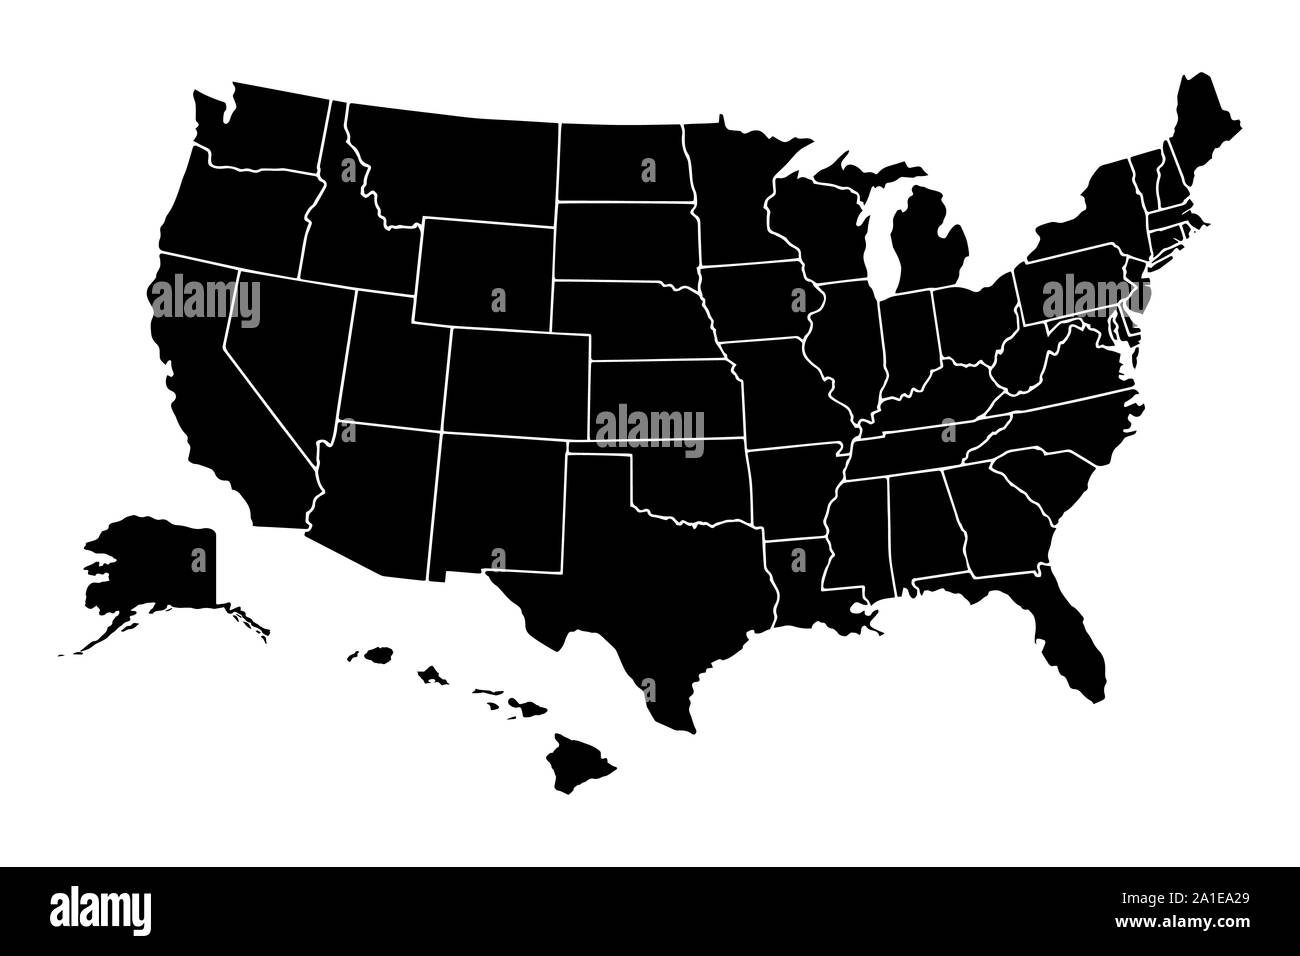 Mappa di Stati Uniti d'America con membri separati Foto Stock